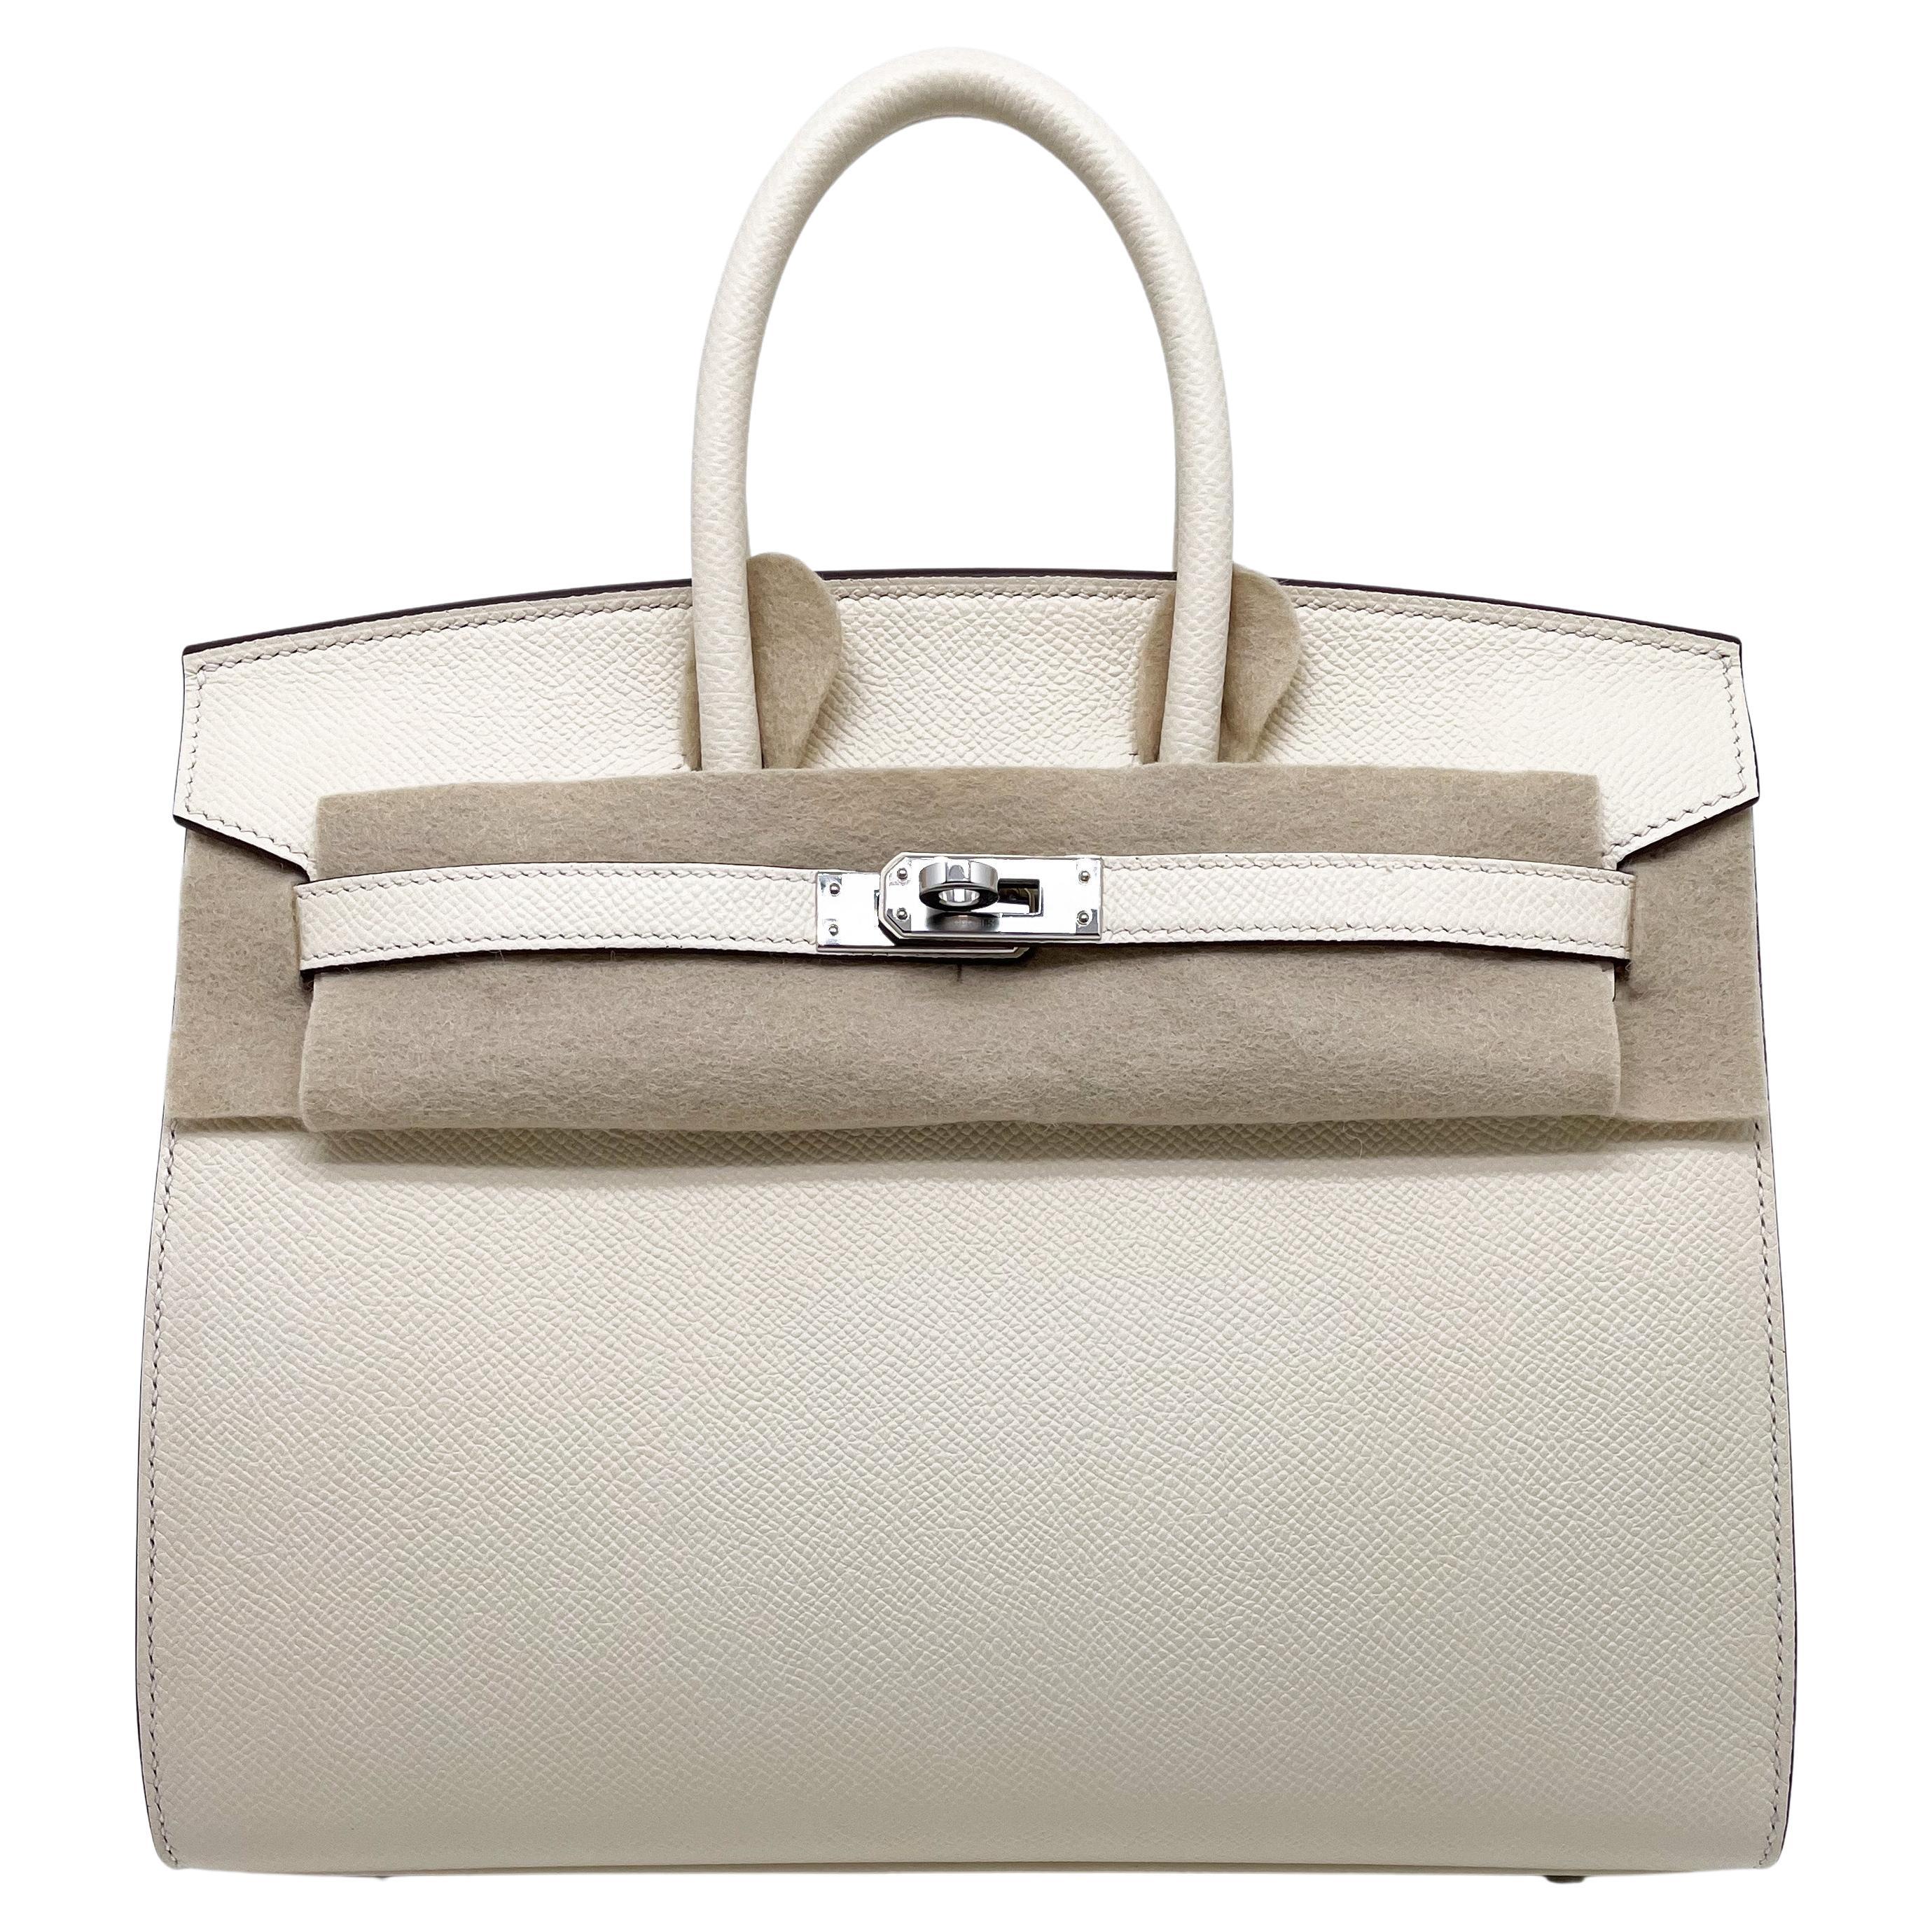 Prächtige Hermès Birkin Satteltasche 25 cm aus Epsom Nata Kalbsleder.
Silberne Metallverzierung.
Zubehör: Clochette, Schlüssel, Vorhängeschloss, Dustbag, Regenschutz, Box.
New nie mit allen Schutzmaßnahmen verwendet.
Nata ist eine einzigartige